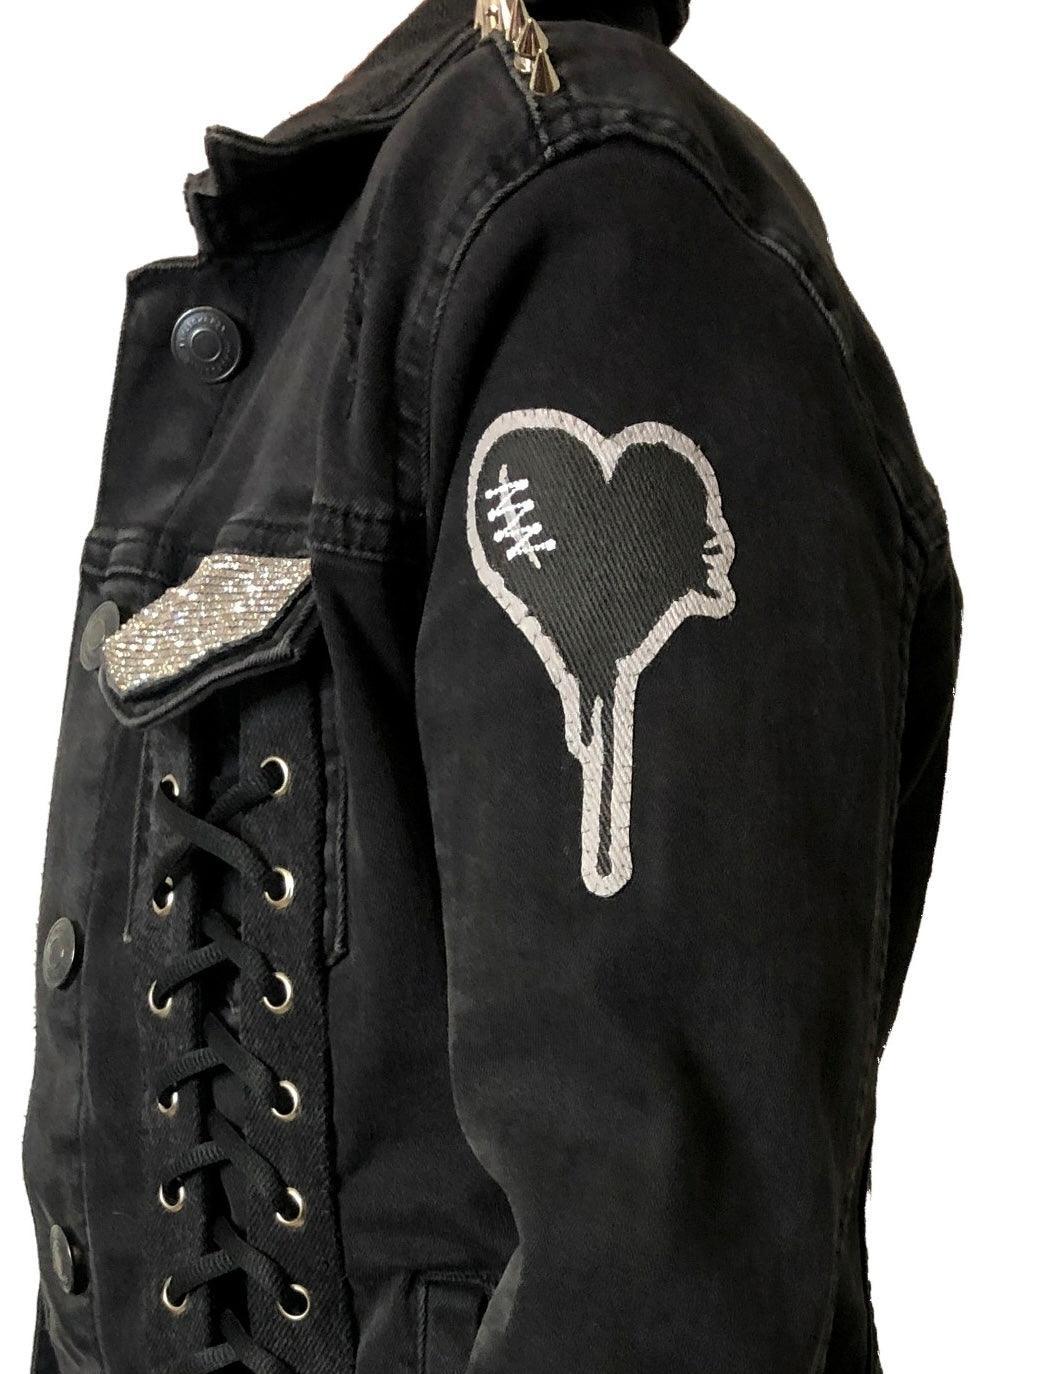 punk rock jacket